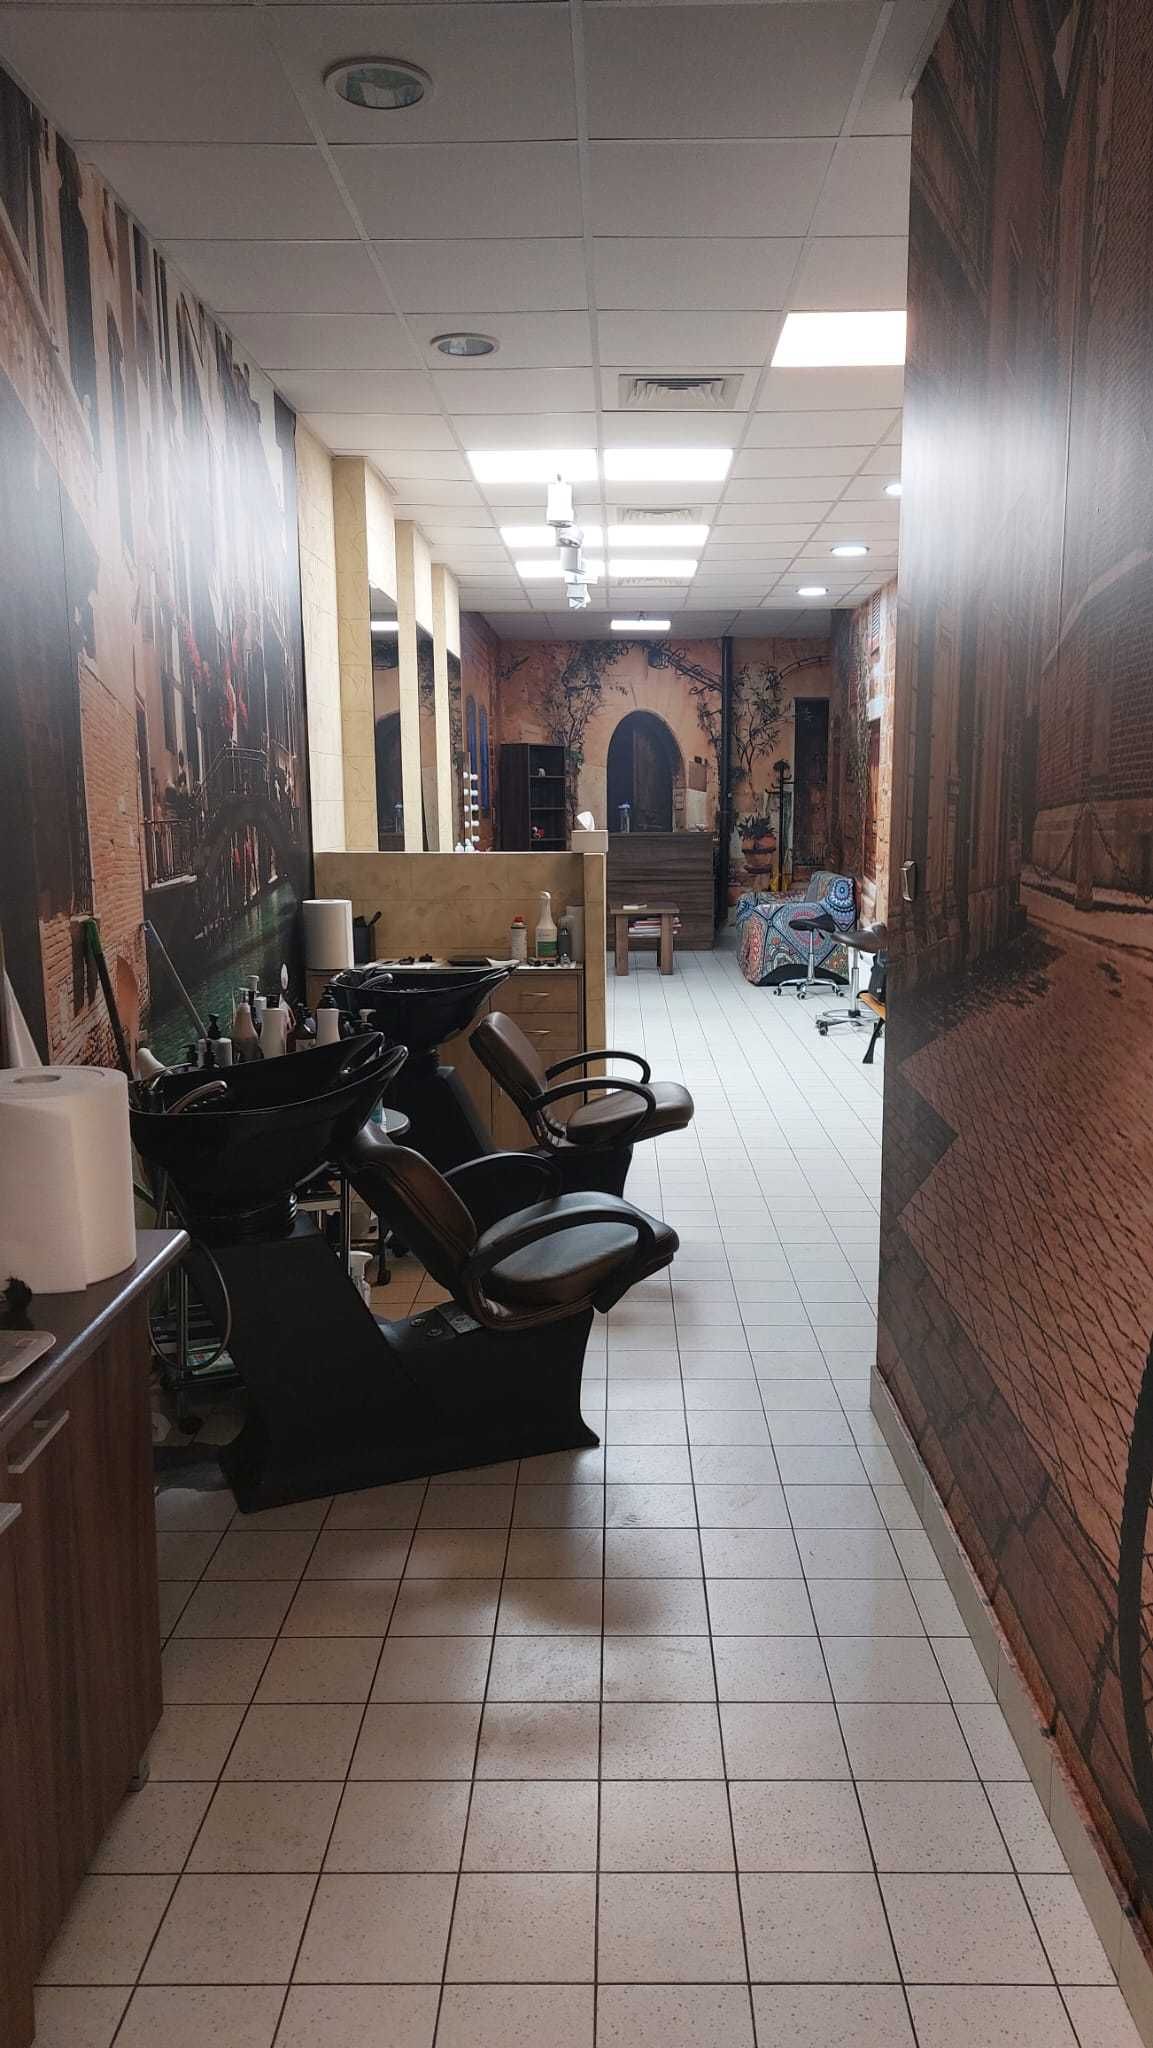 Sprzedam salon fryzjerski z wyposażeniem.